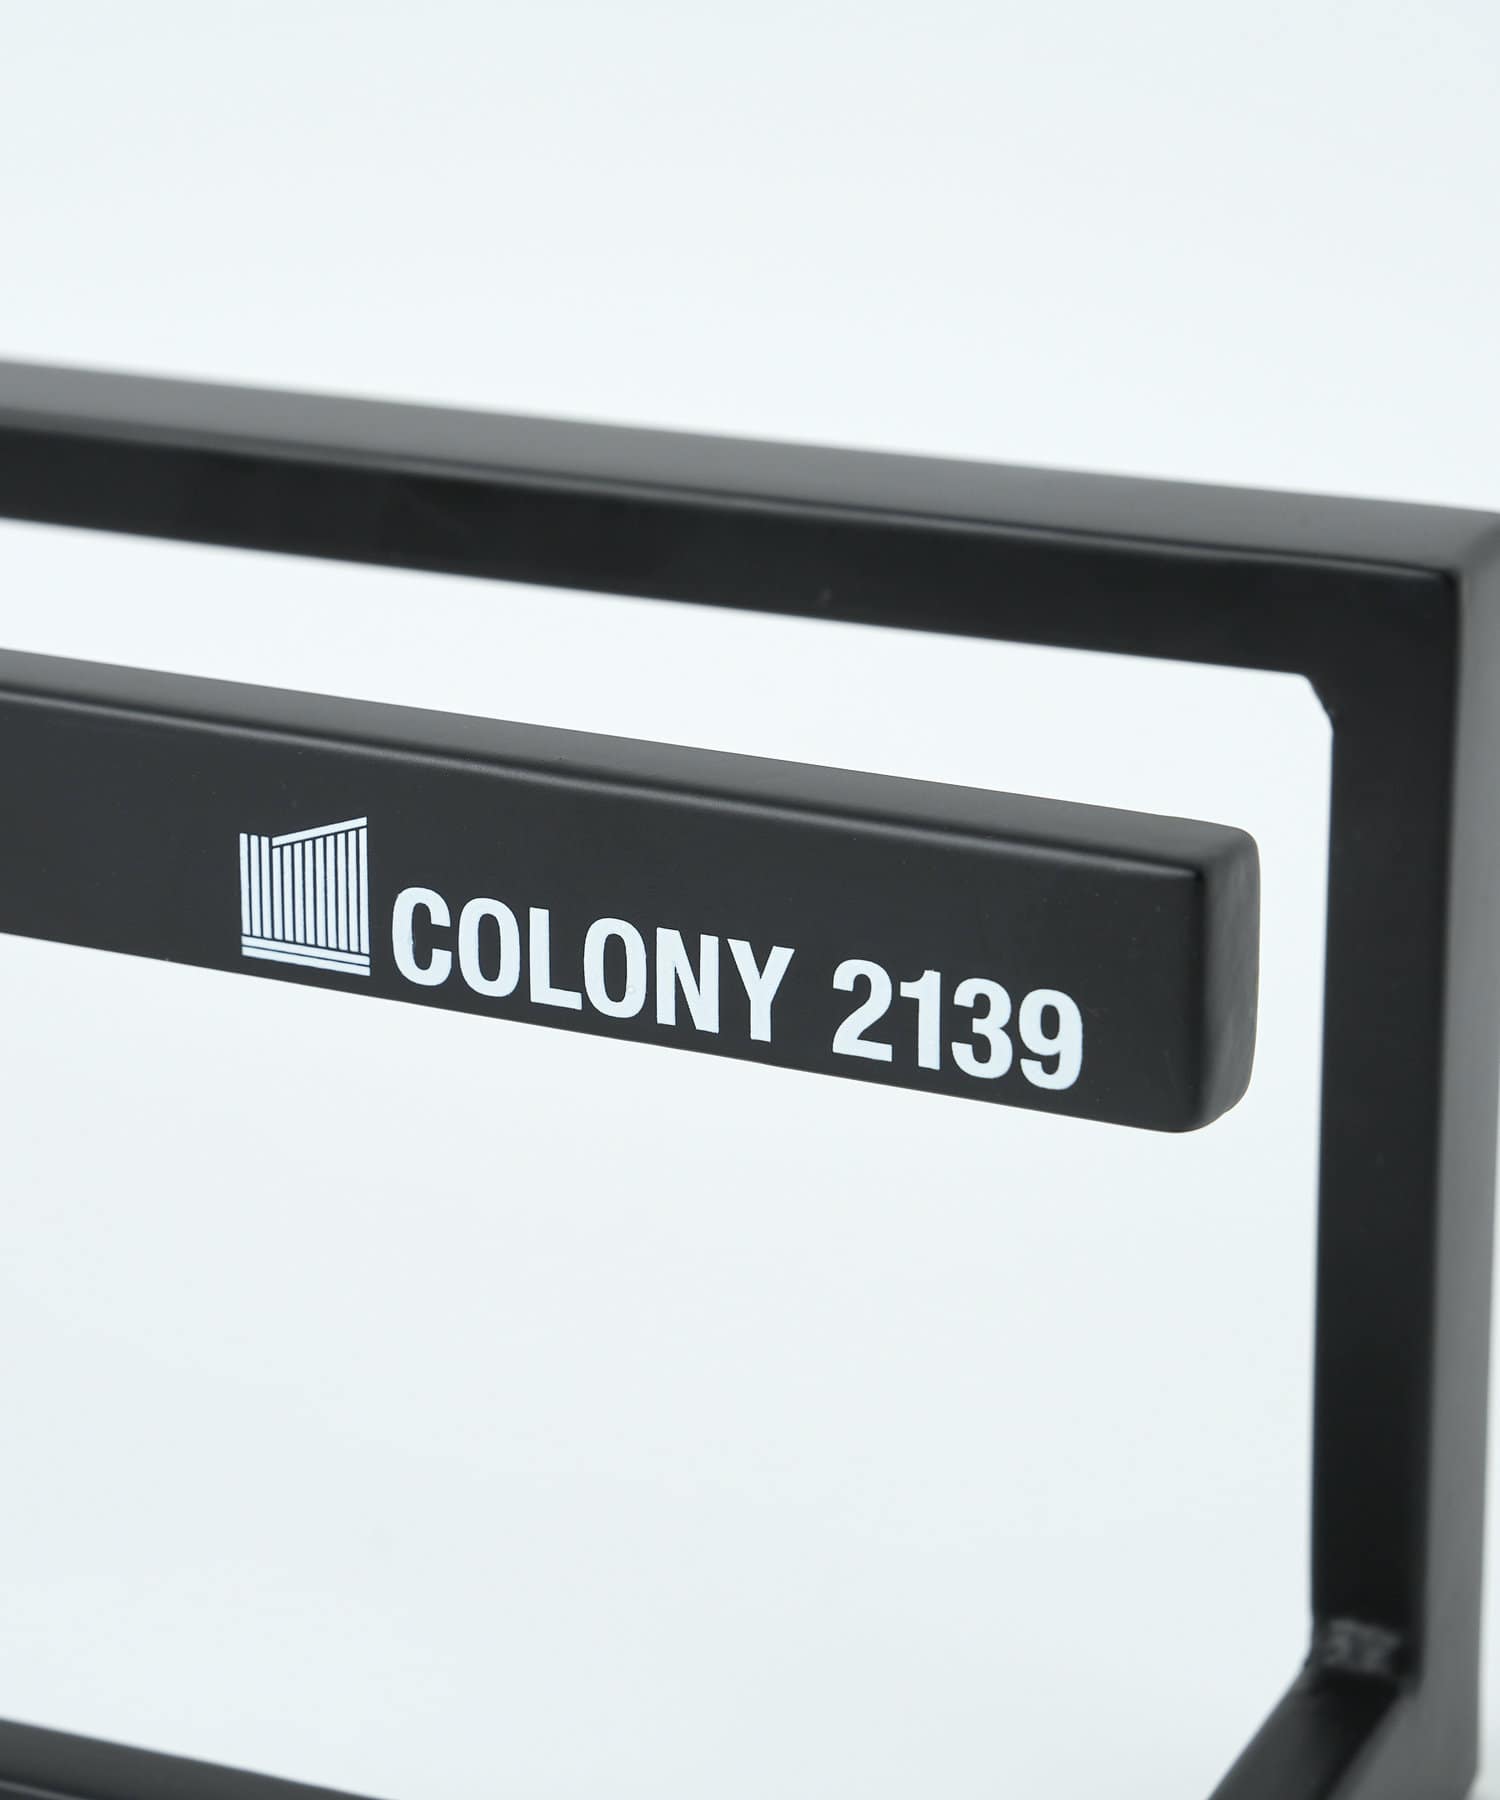 COLONY 2139(コロニー トゥーワンスリーナイン) スリッパラック